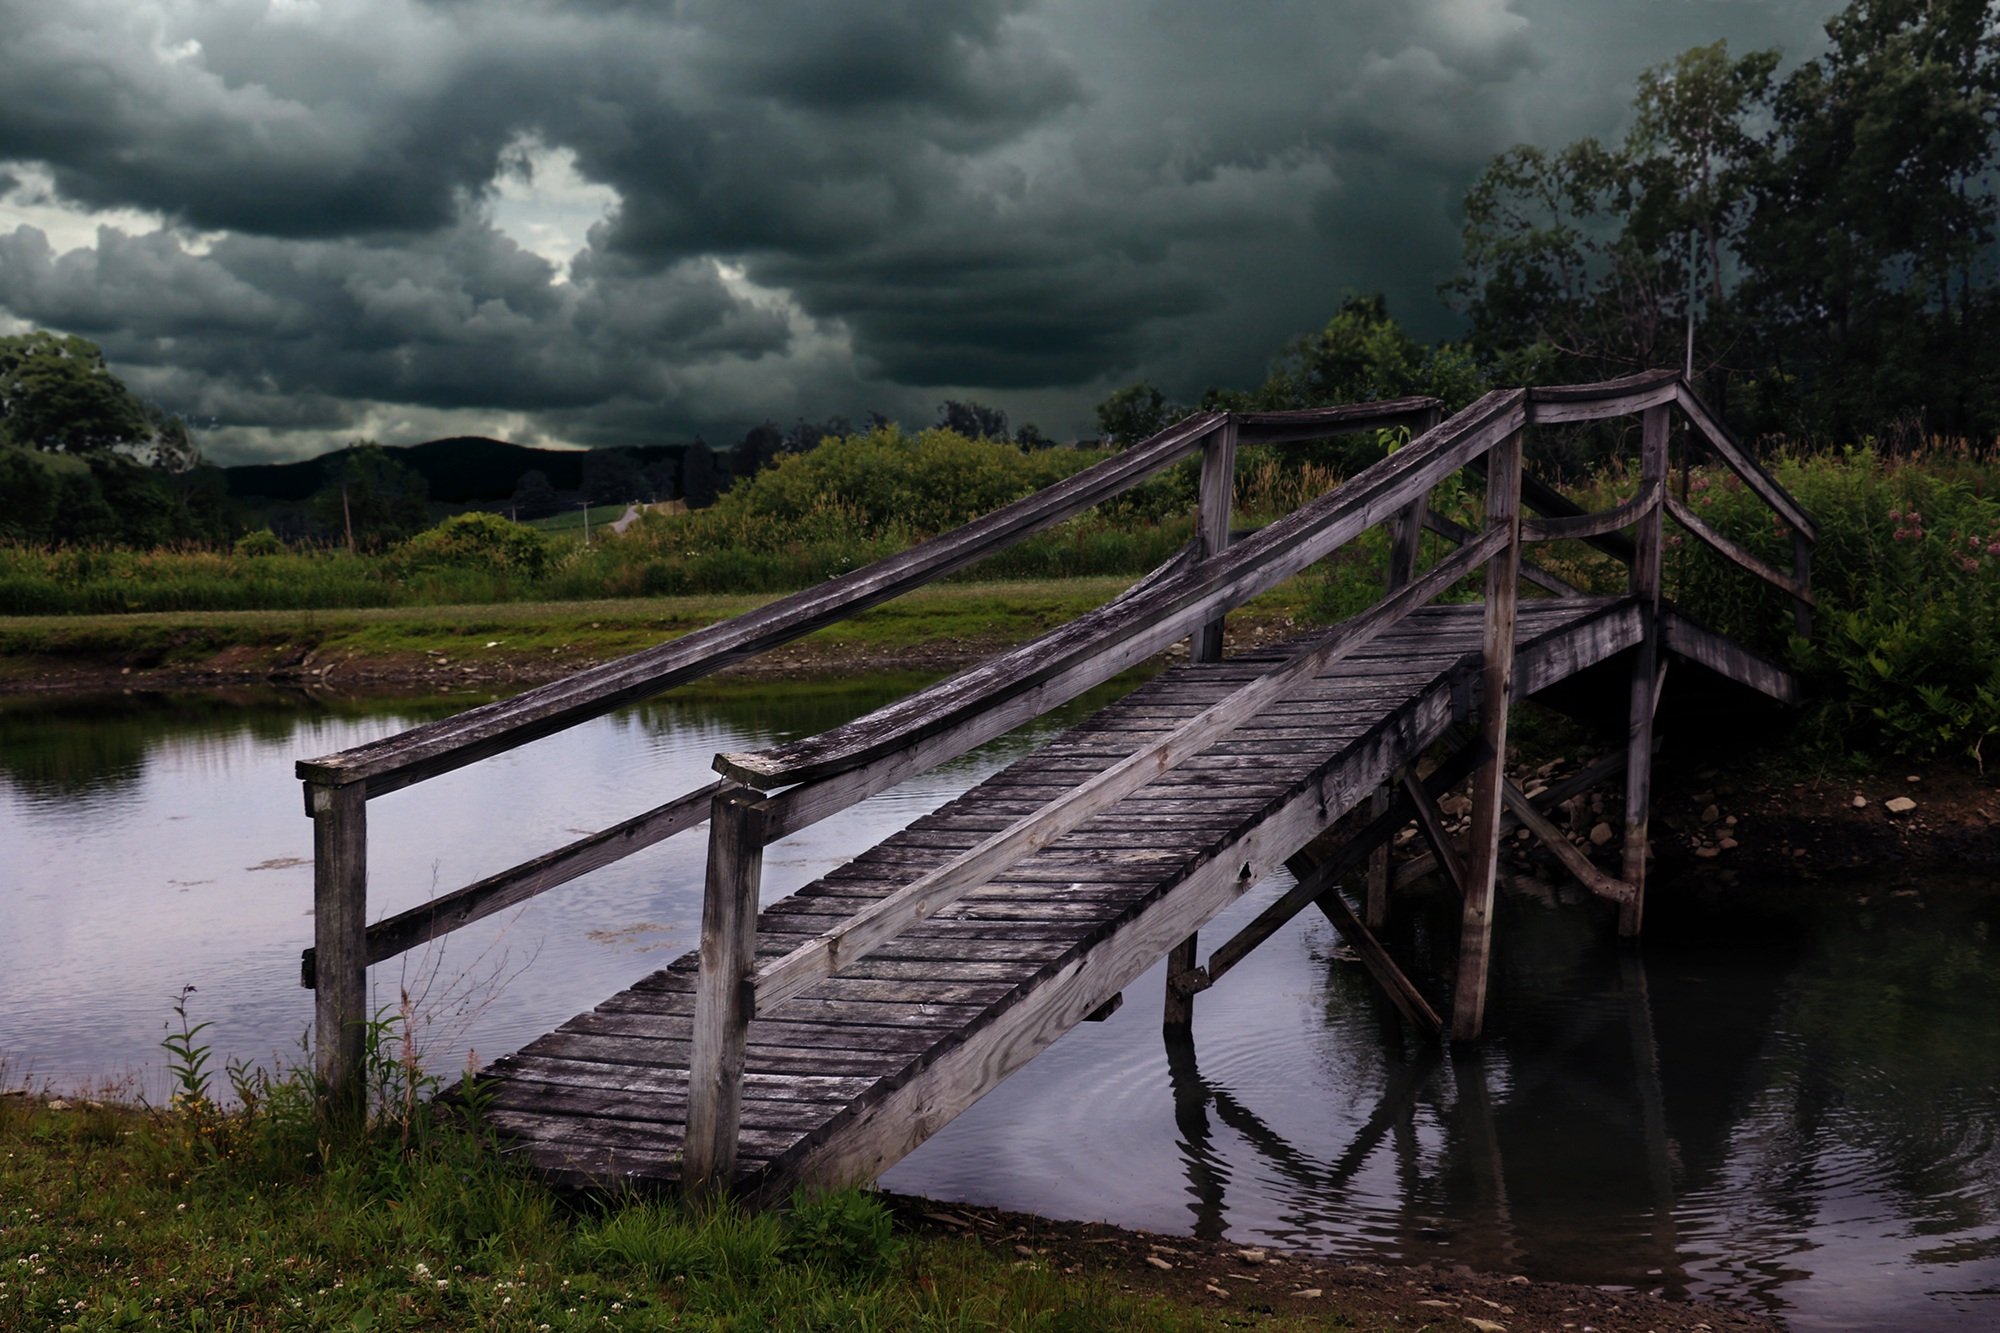 Через реку краткое. Деревянный мост. Старый деревянный мостик. Деревянный мост через реку. Деревянный мостик через речку.